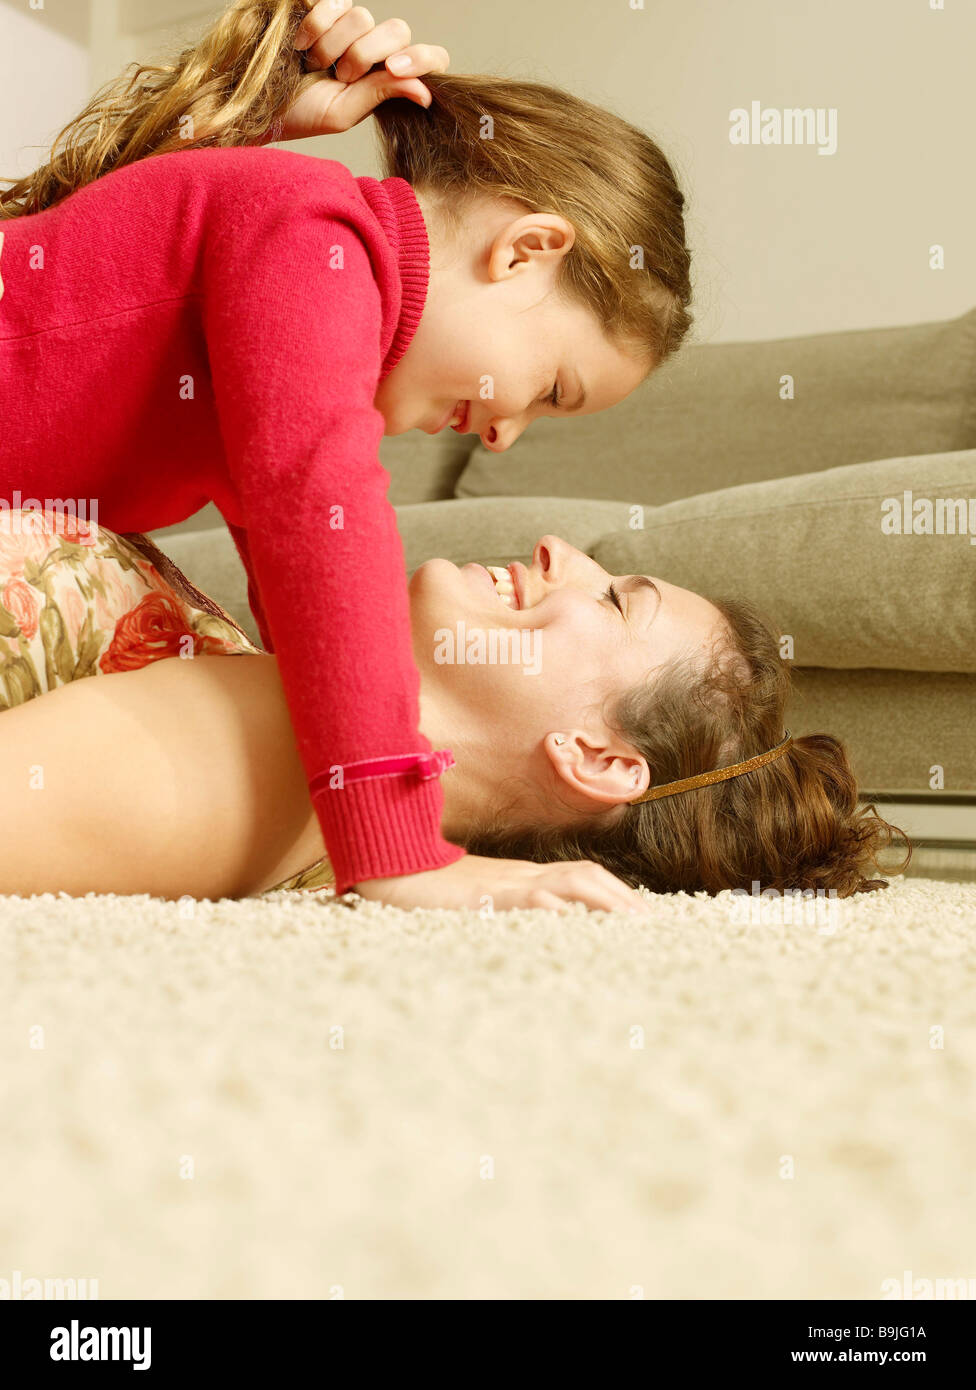 Она лежит как маме. Мама с дочкой на полу. Дочка лежит на маме. Мама с дочкой лежат на полу.